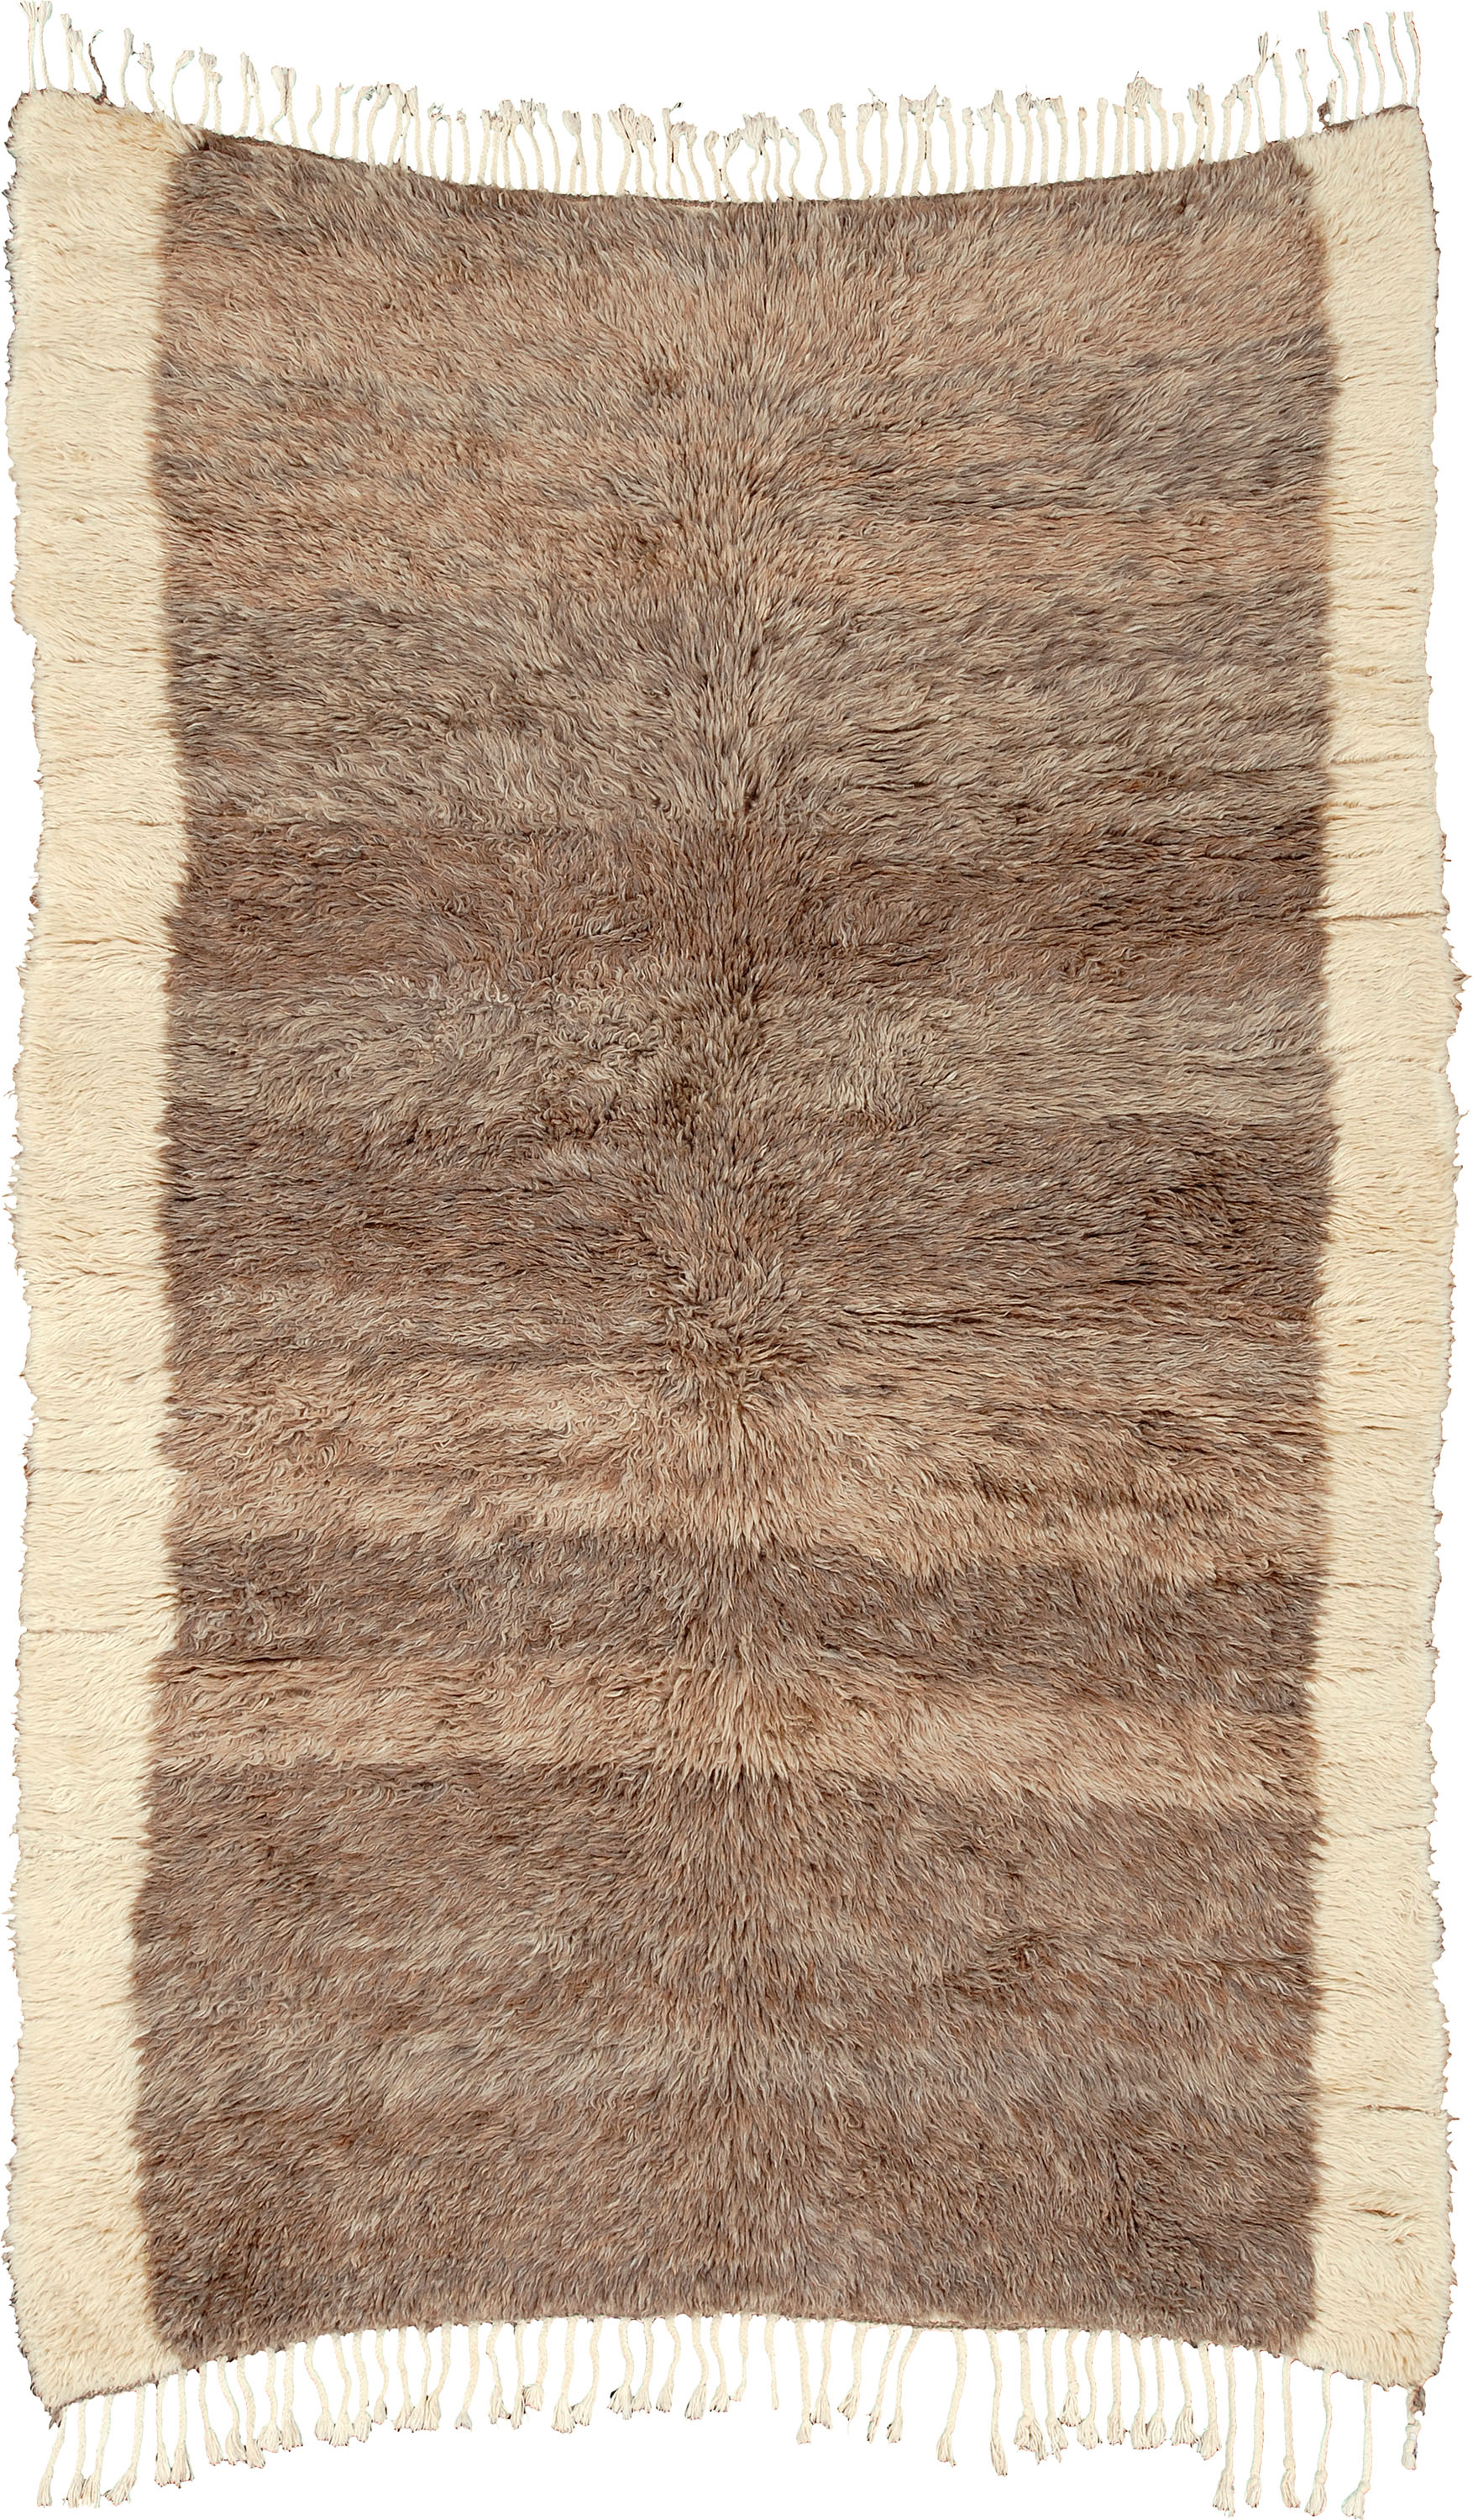 Berber Design | Custom Moroccan Carpet | Ref #15165 | FJ Hakimian | Carpet Gallery in NY